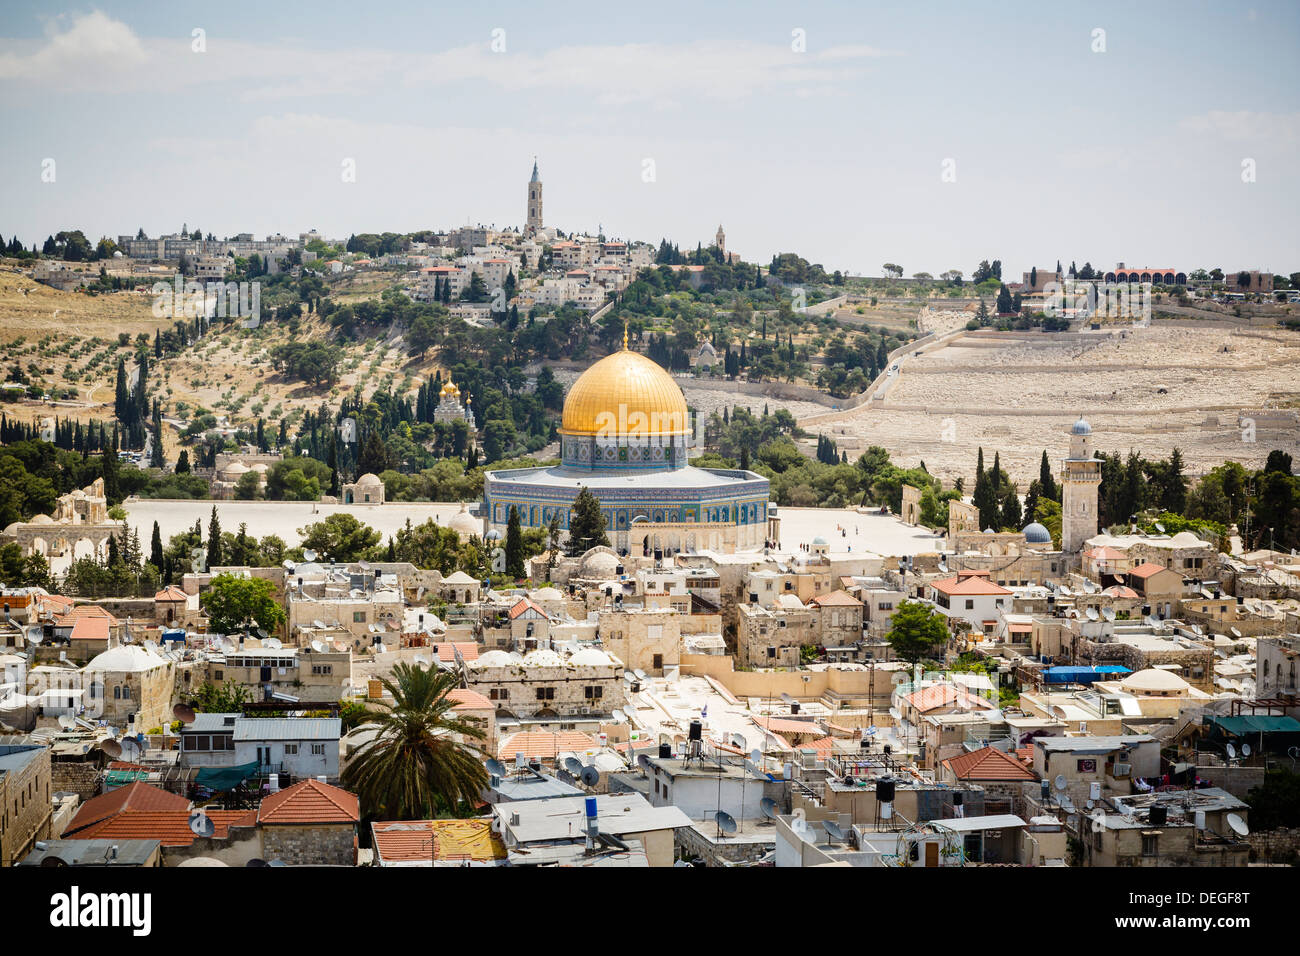 Vue sur la vieille ville avec le dôme du Rocher, l'UNESCO World Heritage Site, Jérusalem, Israël, Moyen Orient Banque D'Images